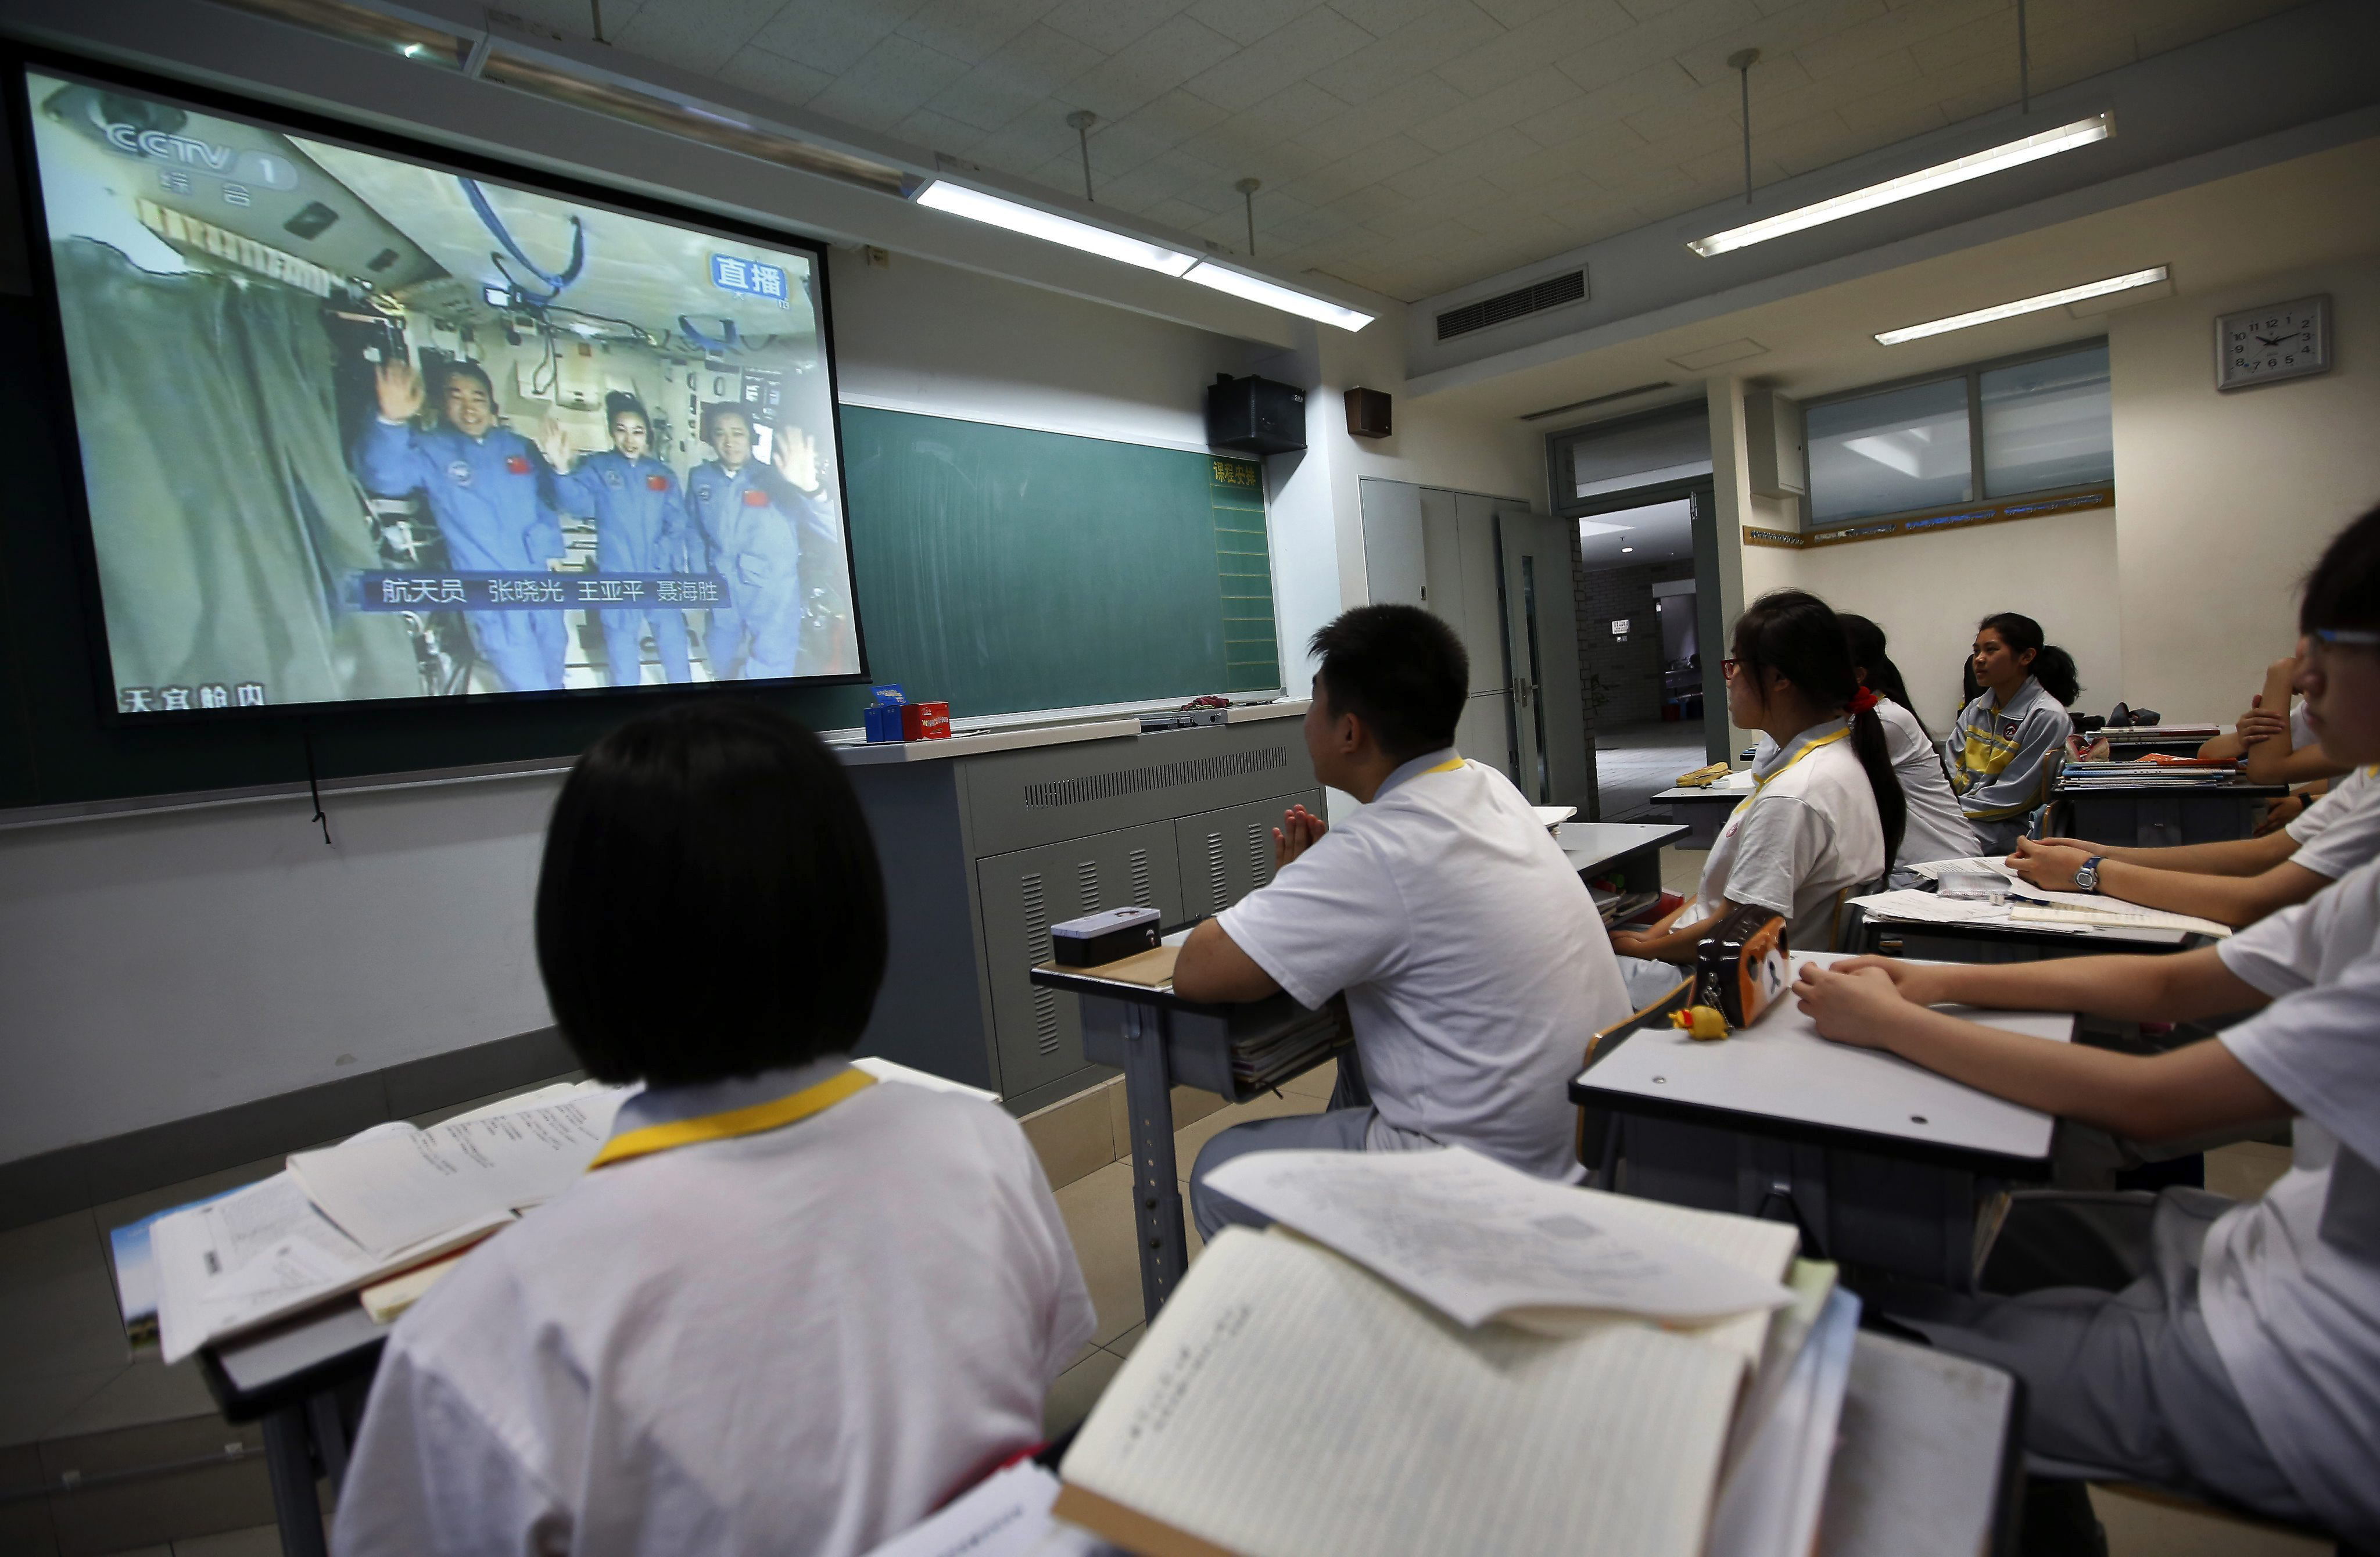 Los niños en China estudian 12 horas al día y reciben clases extra para subir notas